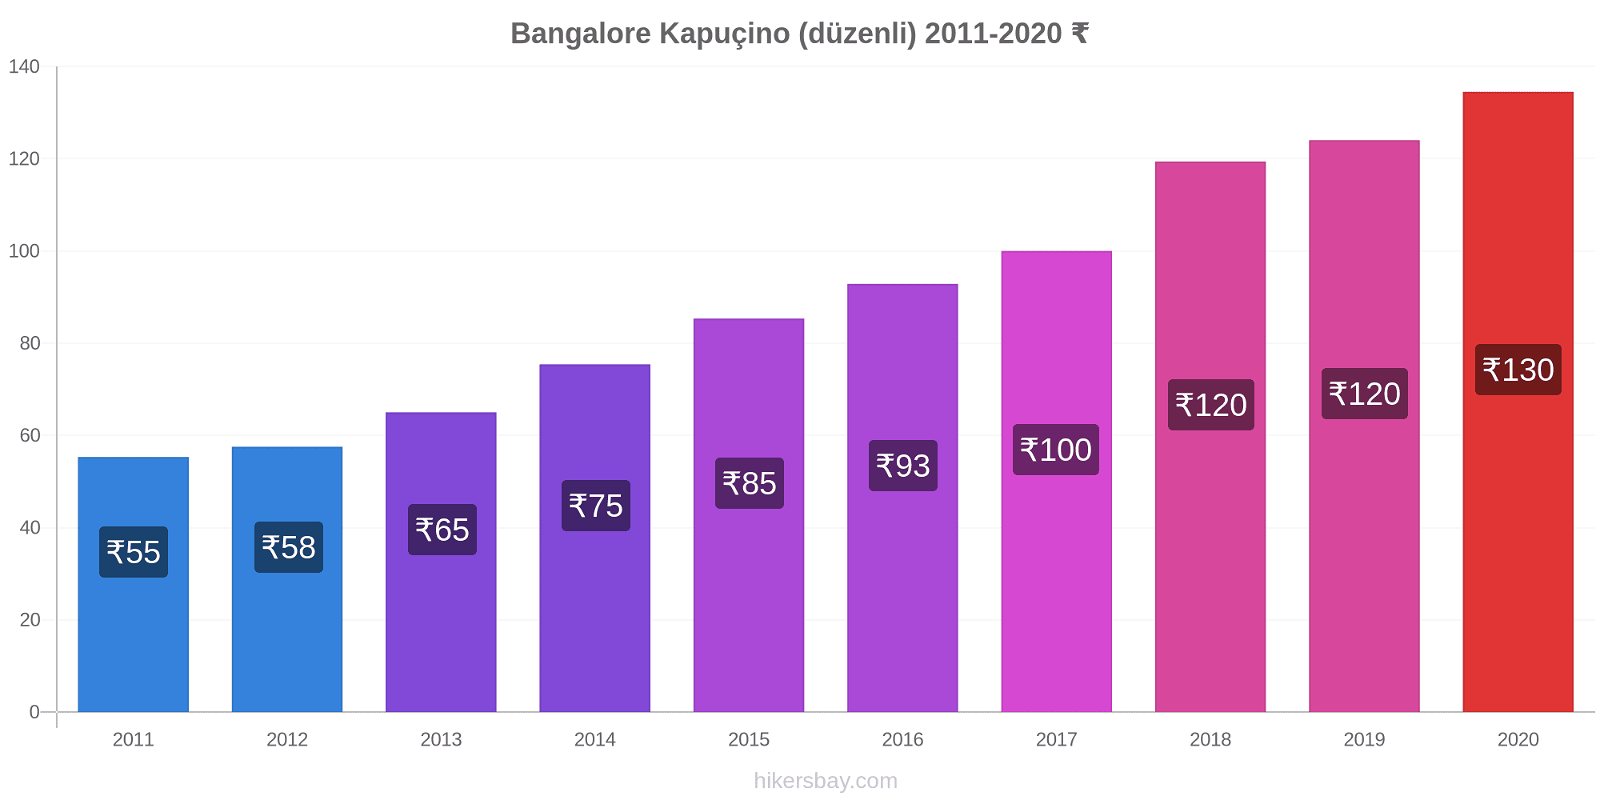 Bangalore fiyat değişiklikleri Kapuçino (düzenli) hikersbay.com